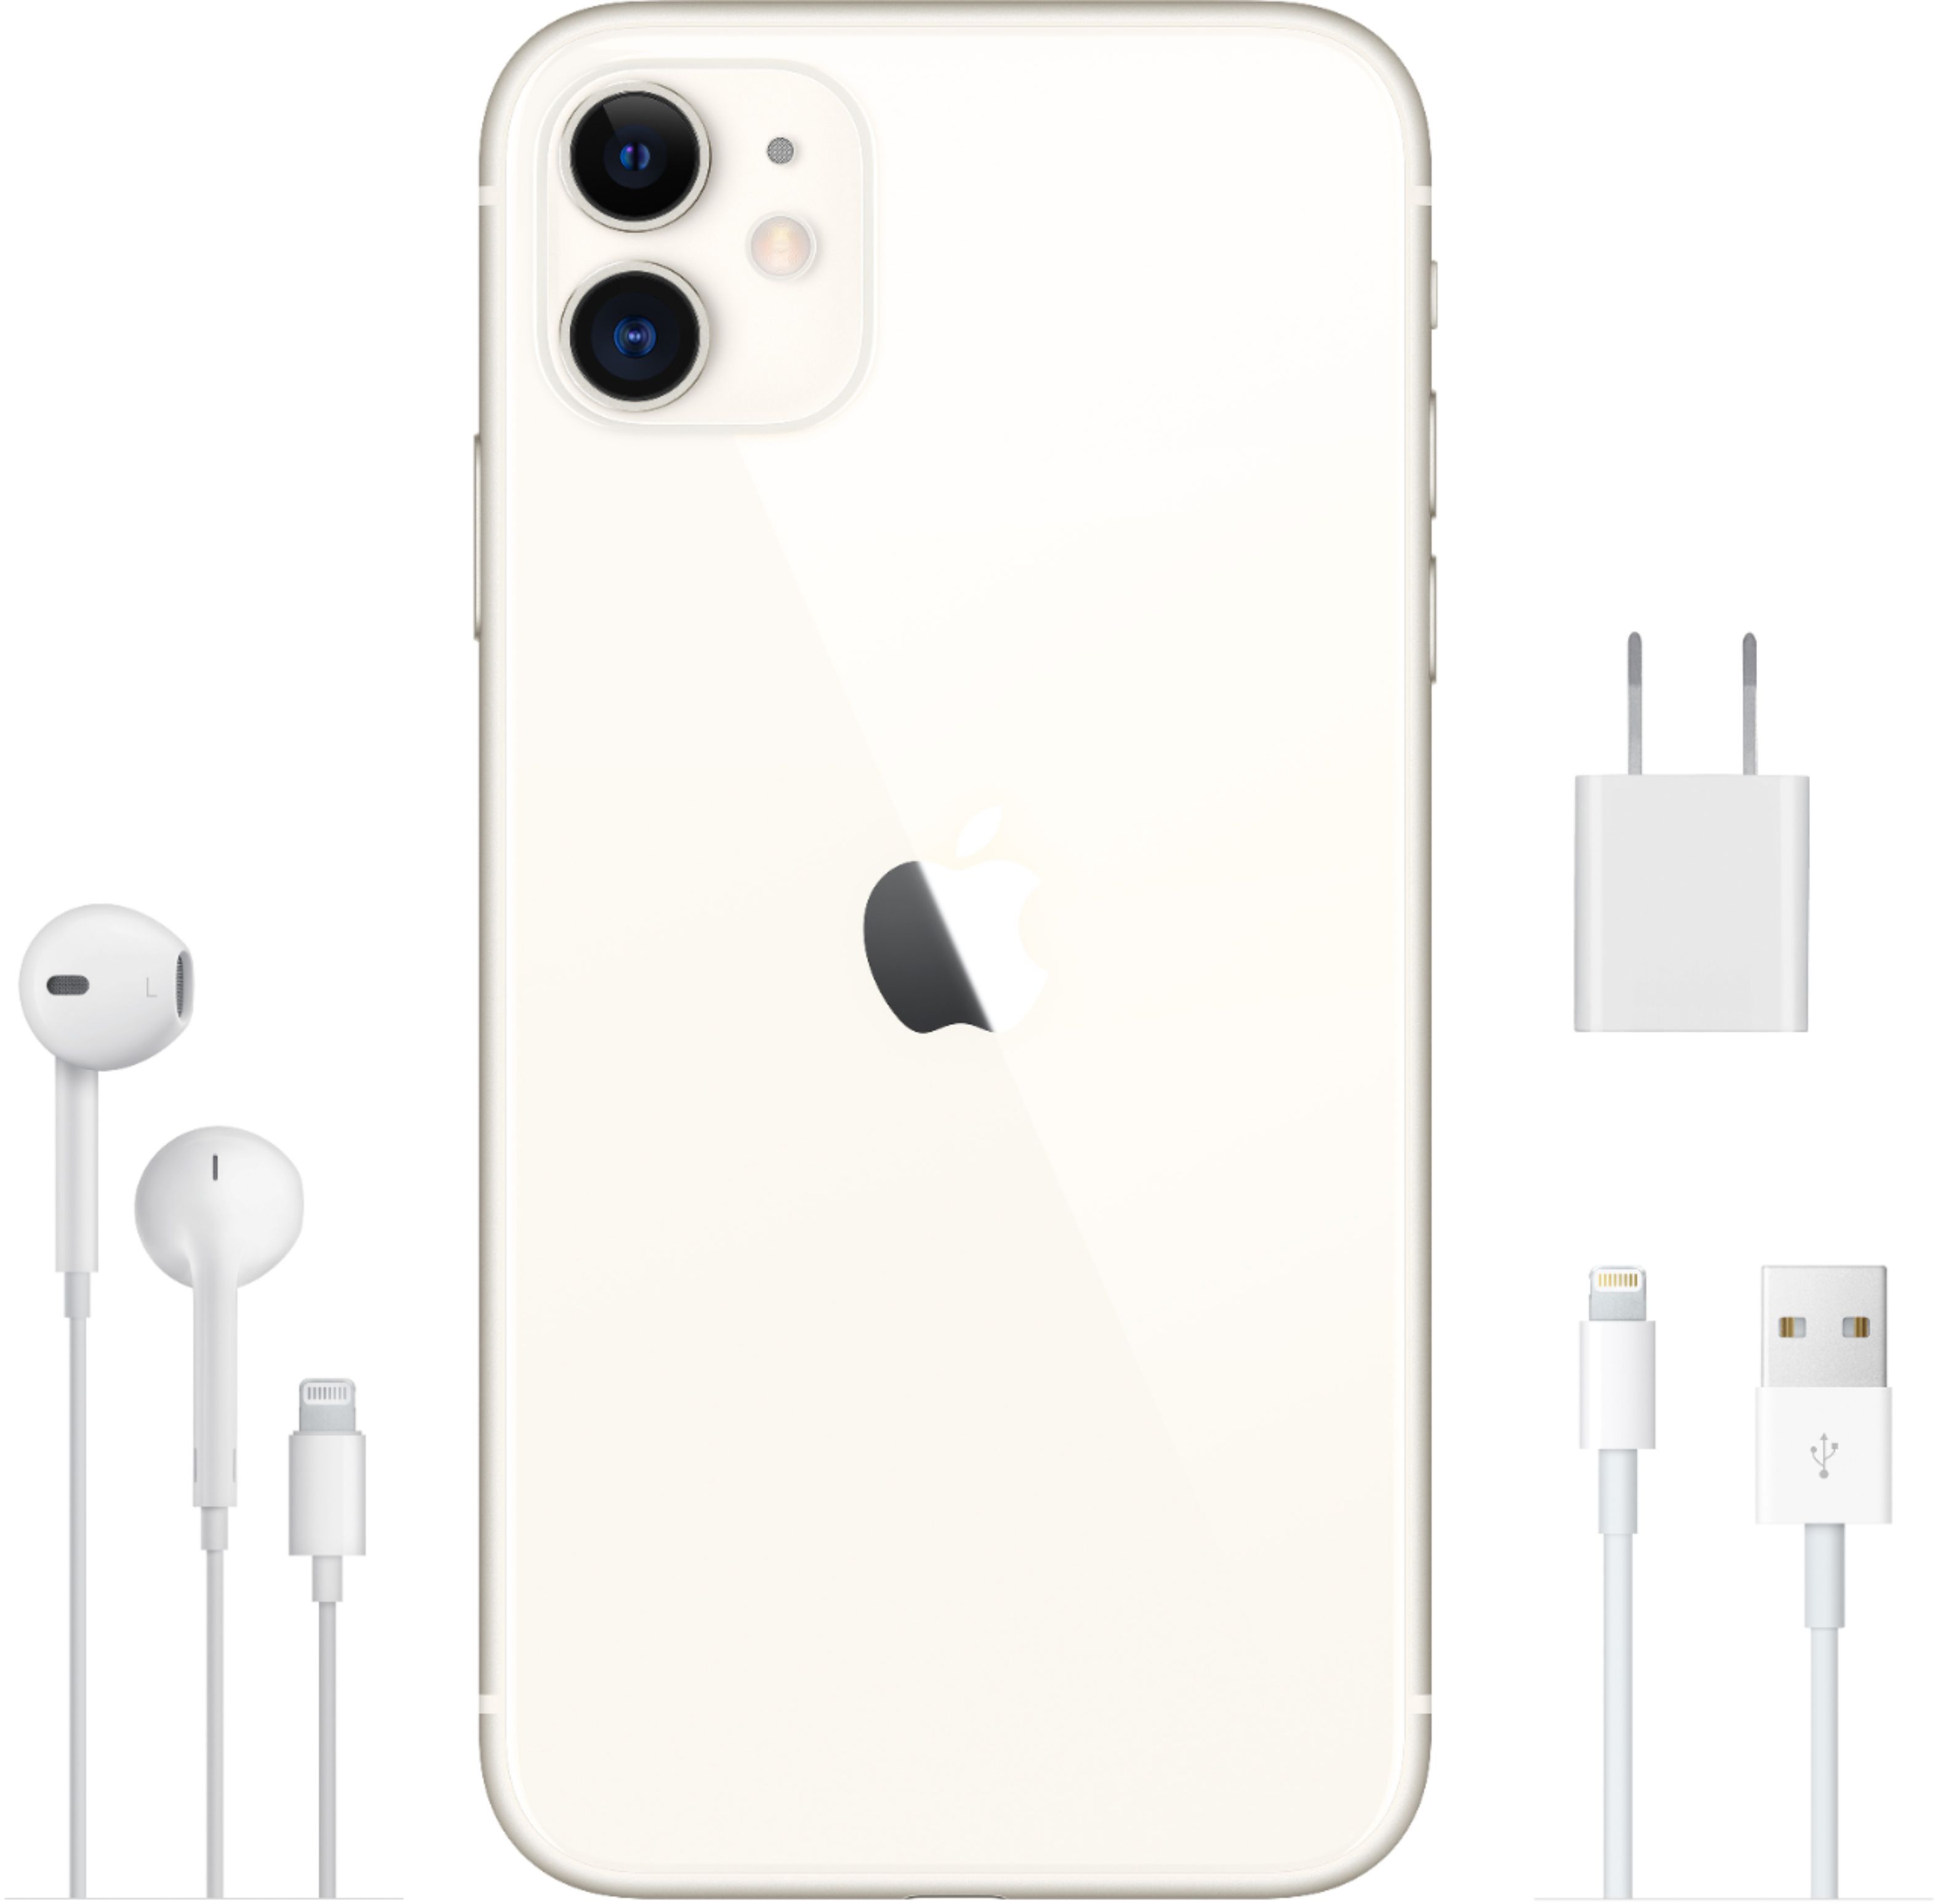  Apple - iPhone 11, versión de EE. UU., 256GB, blanco - Sprint  (renovado) : Celulares y Accesorios